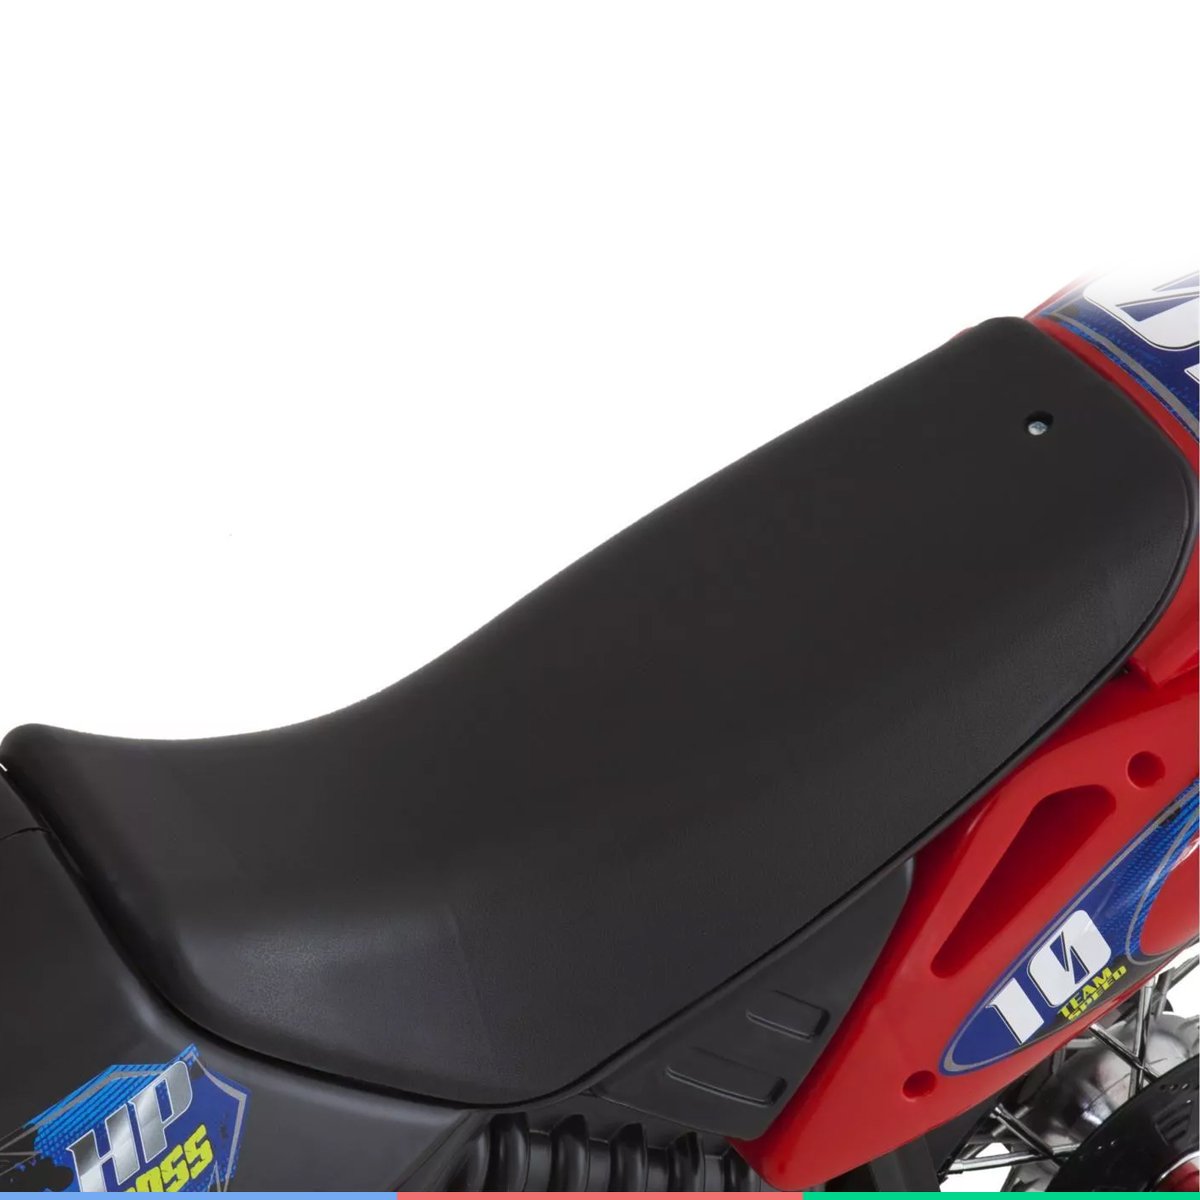 Mini Moto Cross Elétrica Infantil Motoca Menino Vermelha - xplast